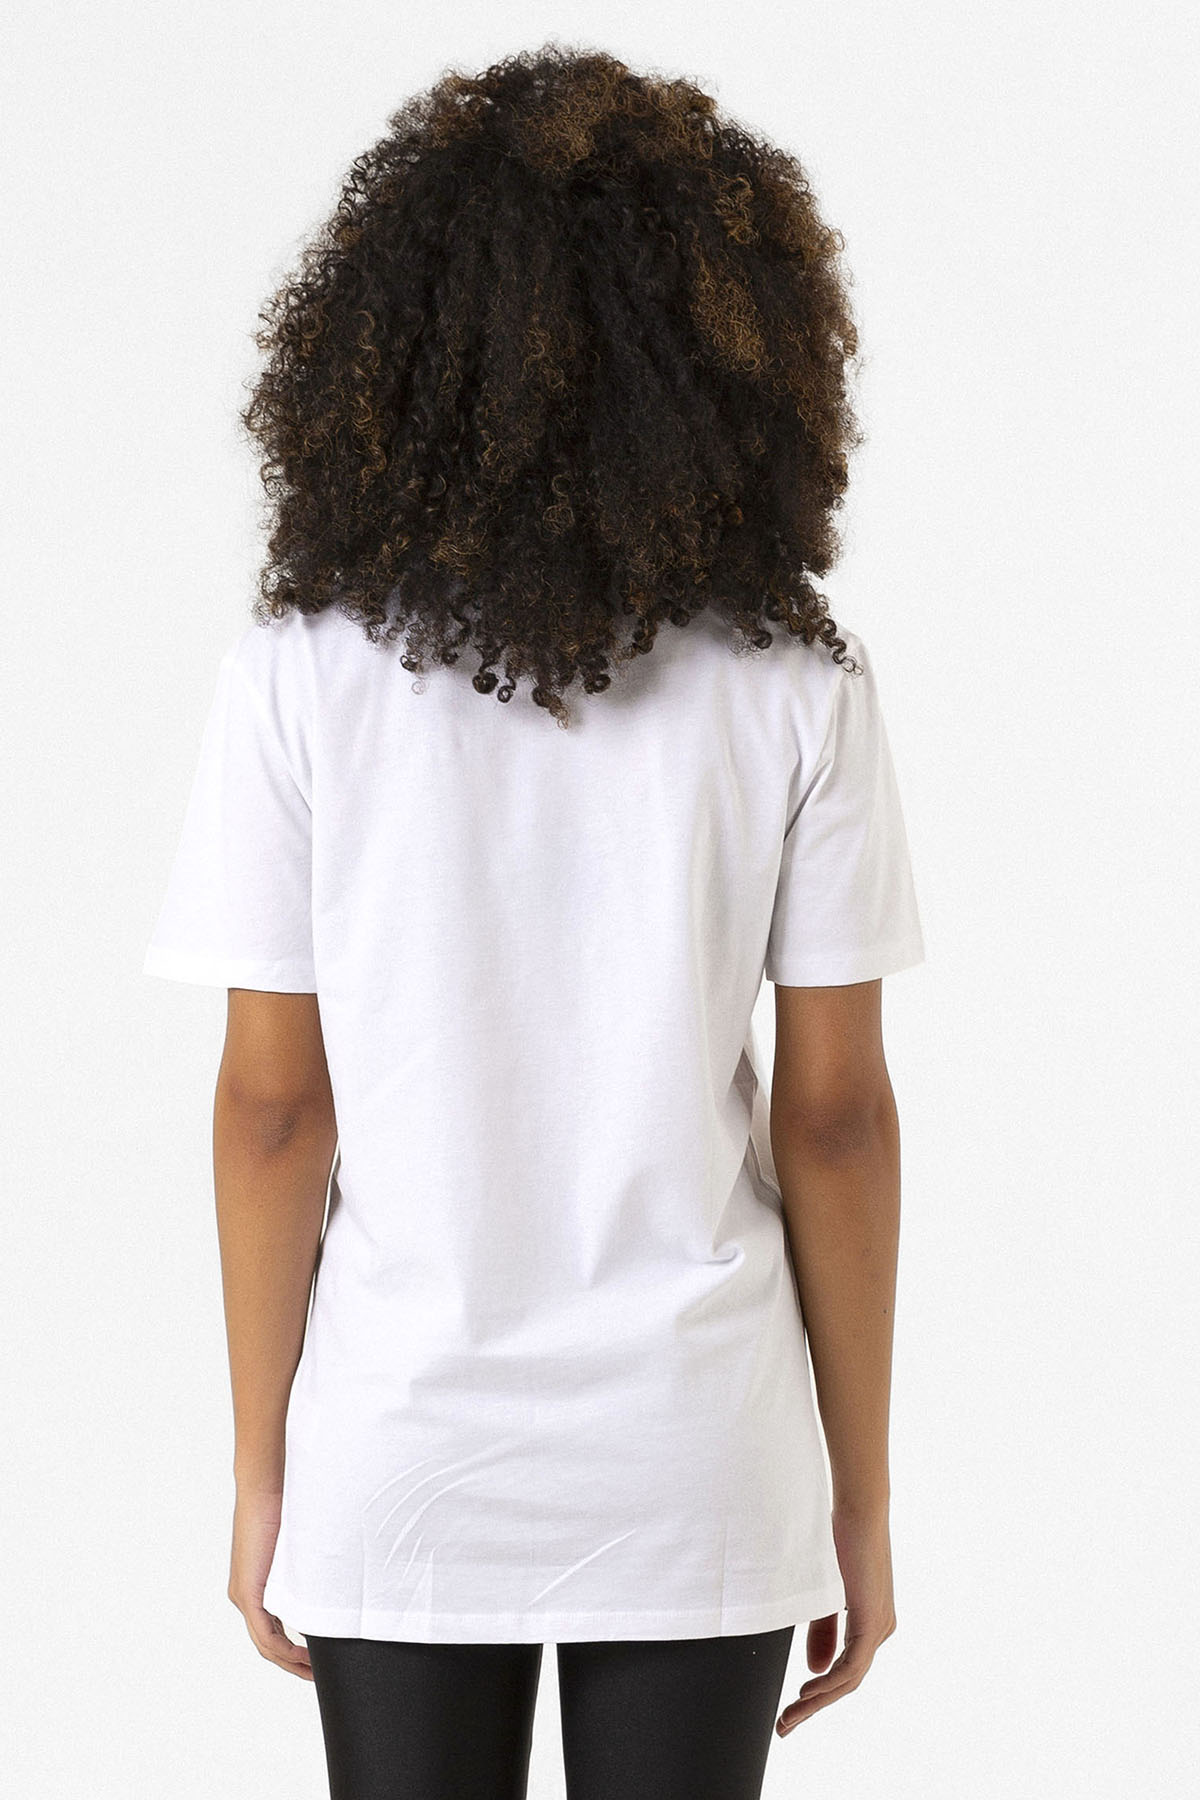 Chicago Fire Logo Beyaz Kadın V yaka Tshirt